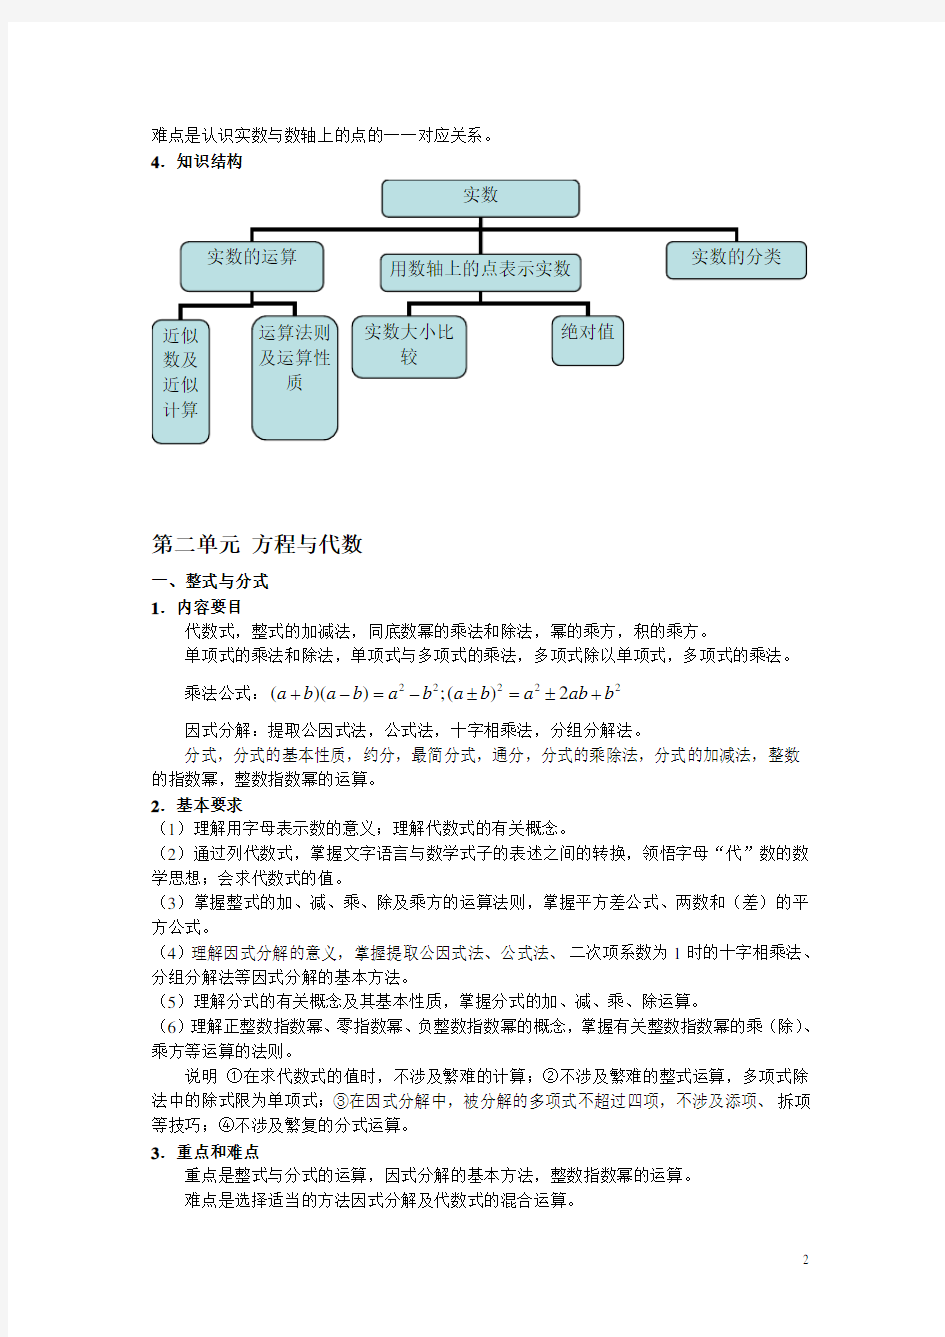 上海中考学科教学基本要求(完整版)-初中数学